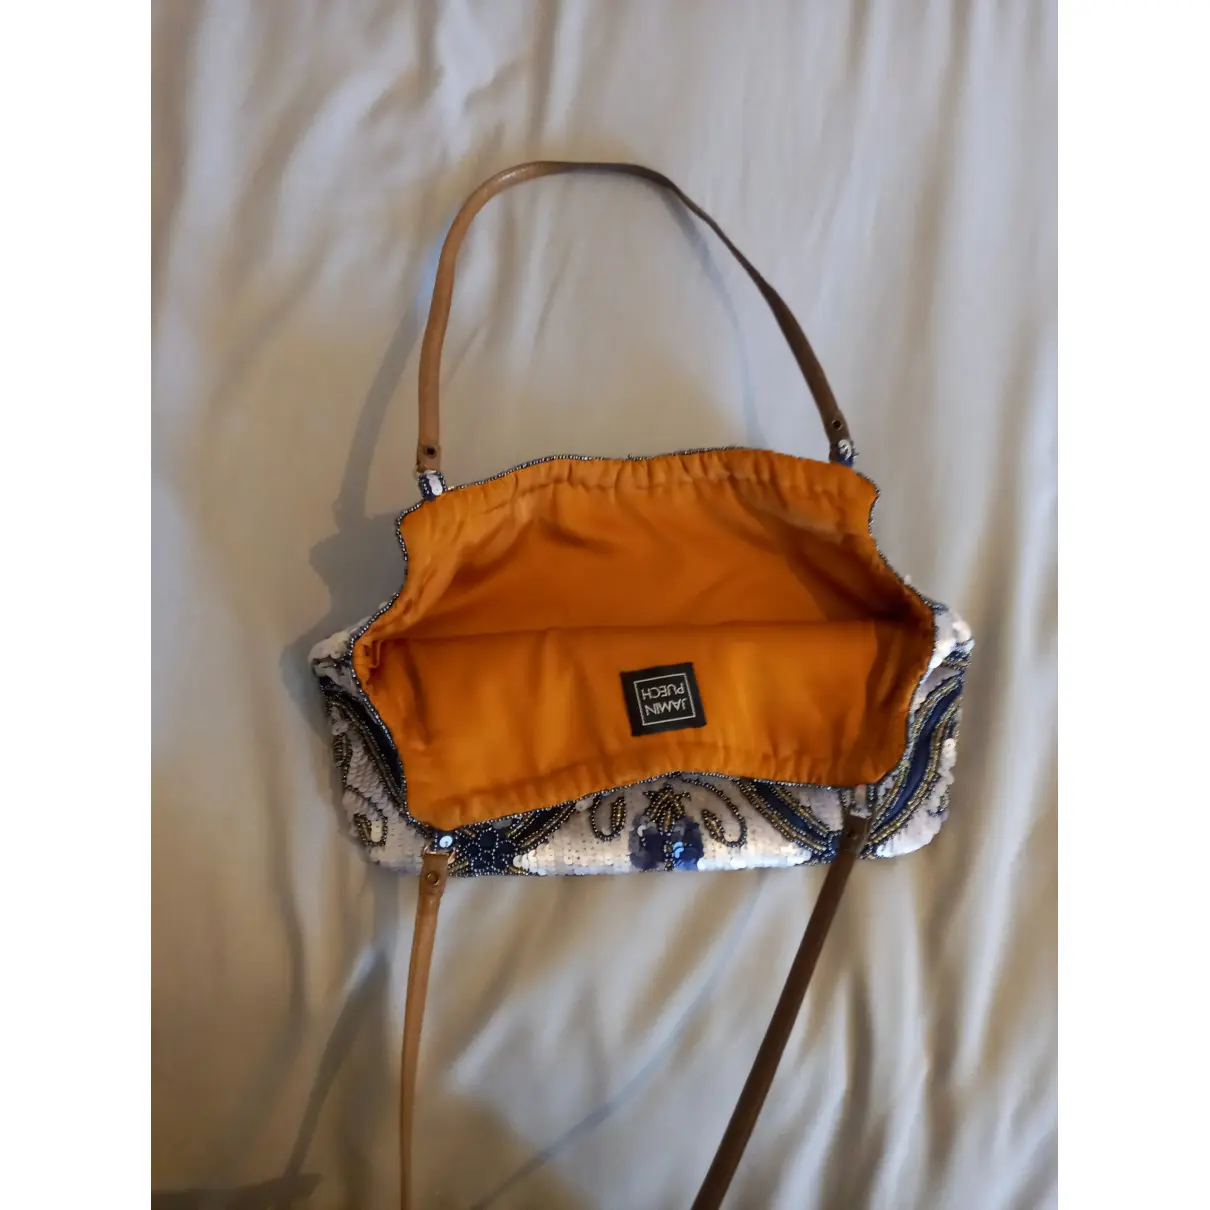 Buy Jamin Puech Glitter handbag online